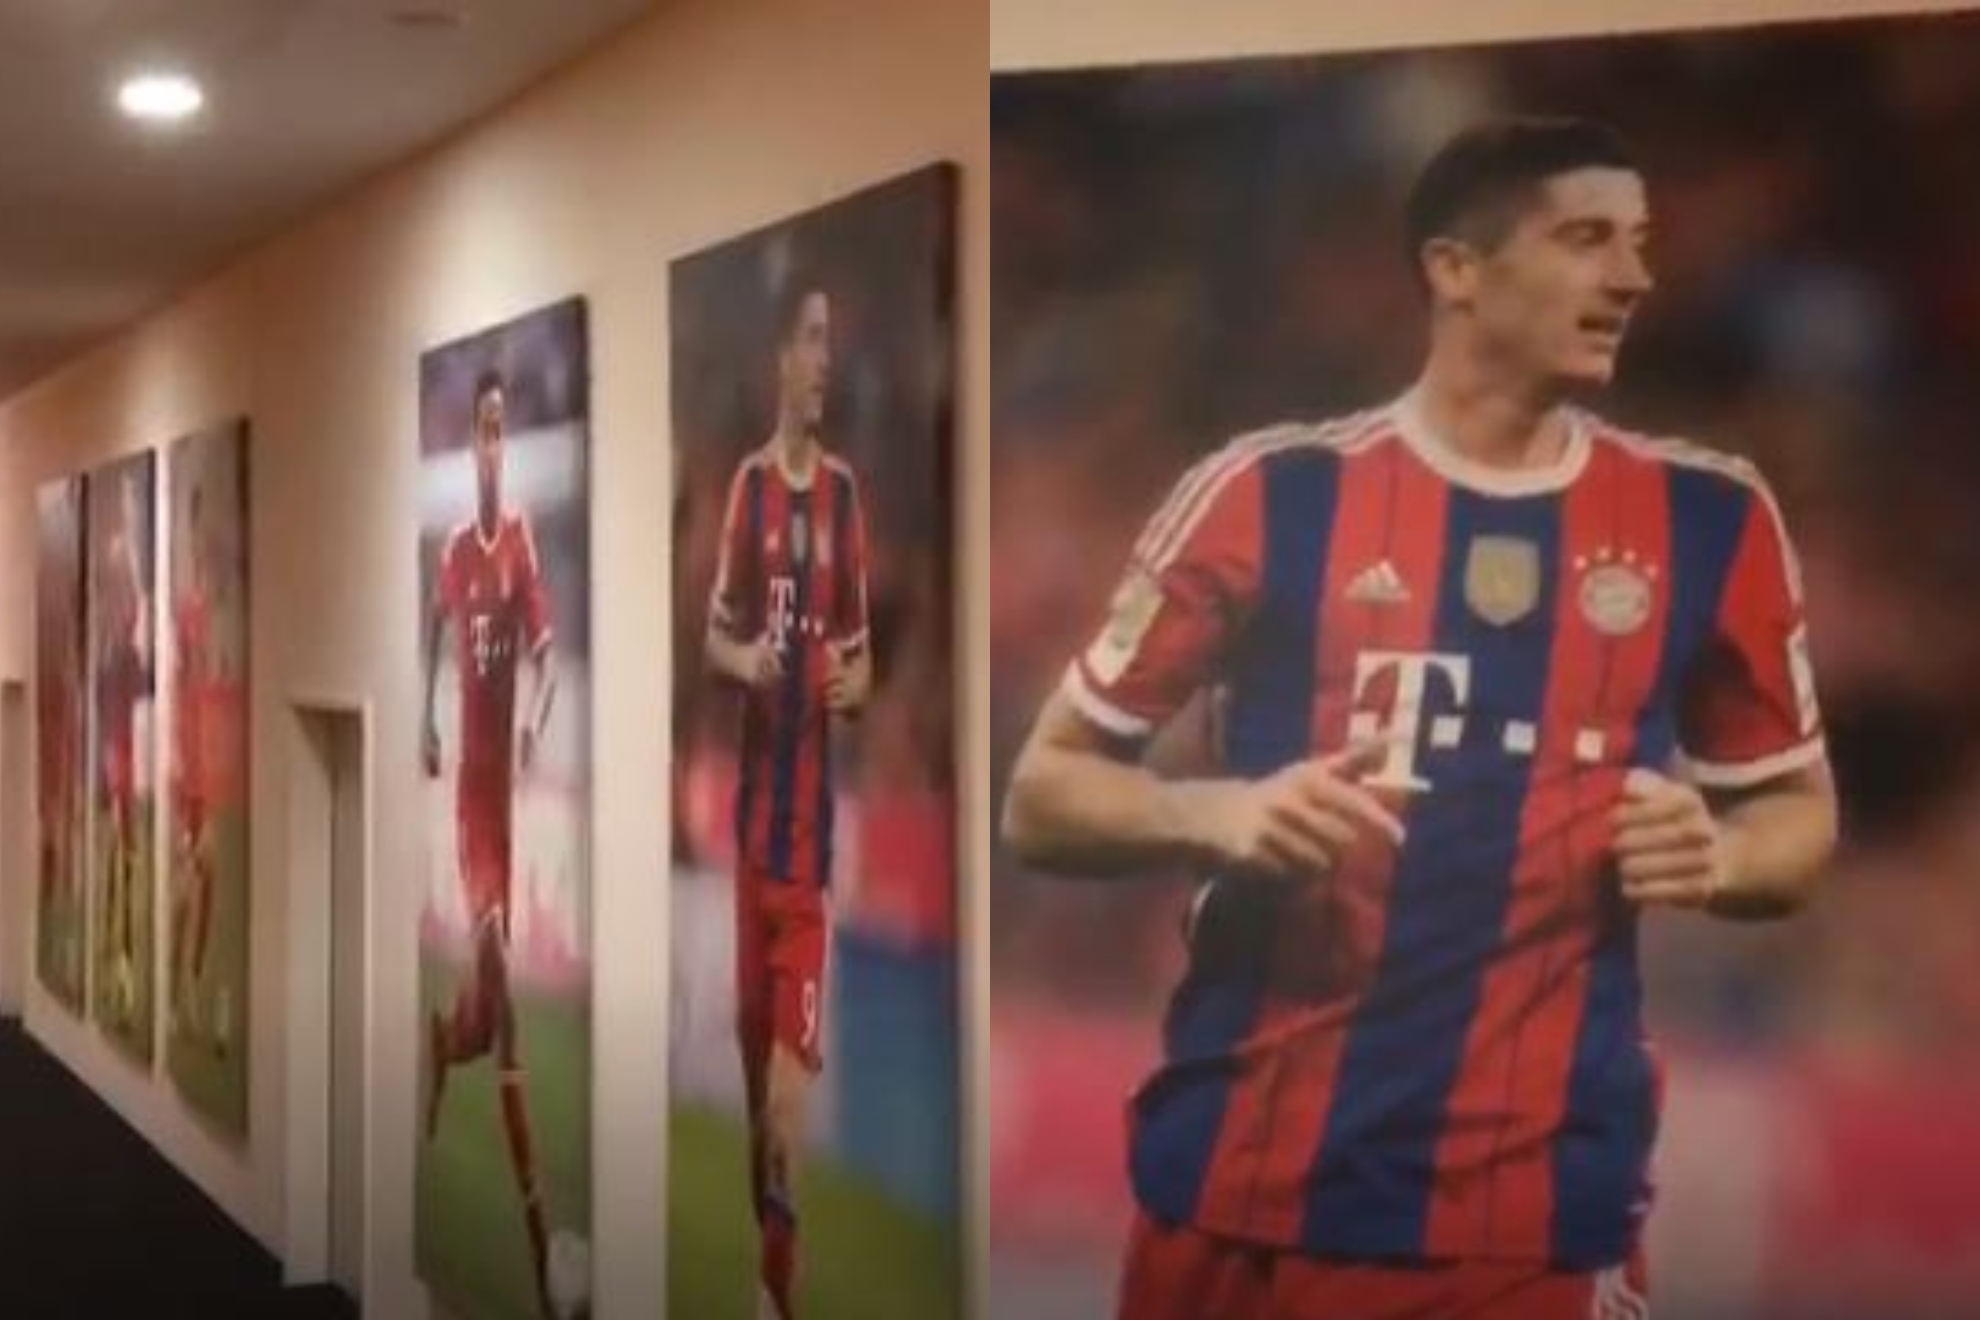 Lewandowski todava no se ha ido del Allianz: ah sigue su recuerdo!